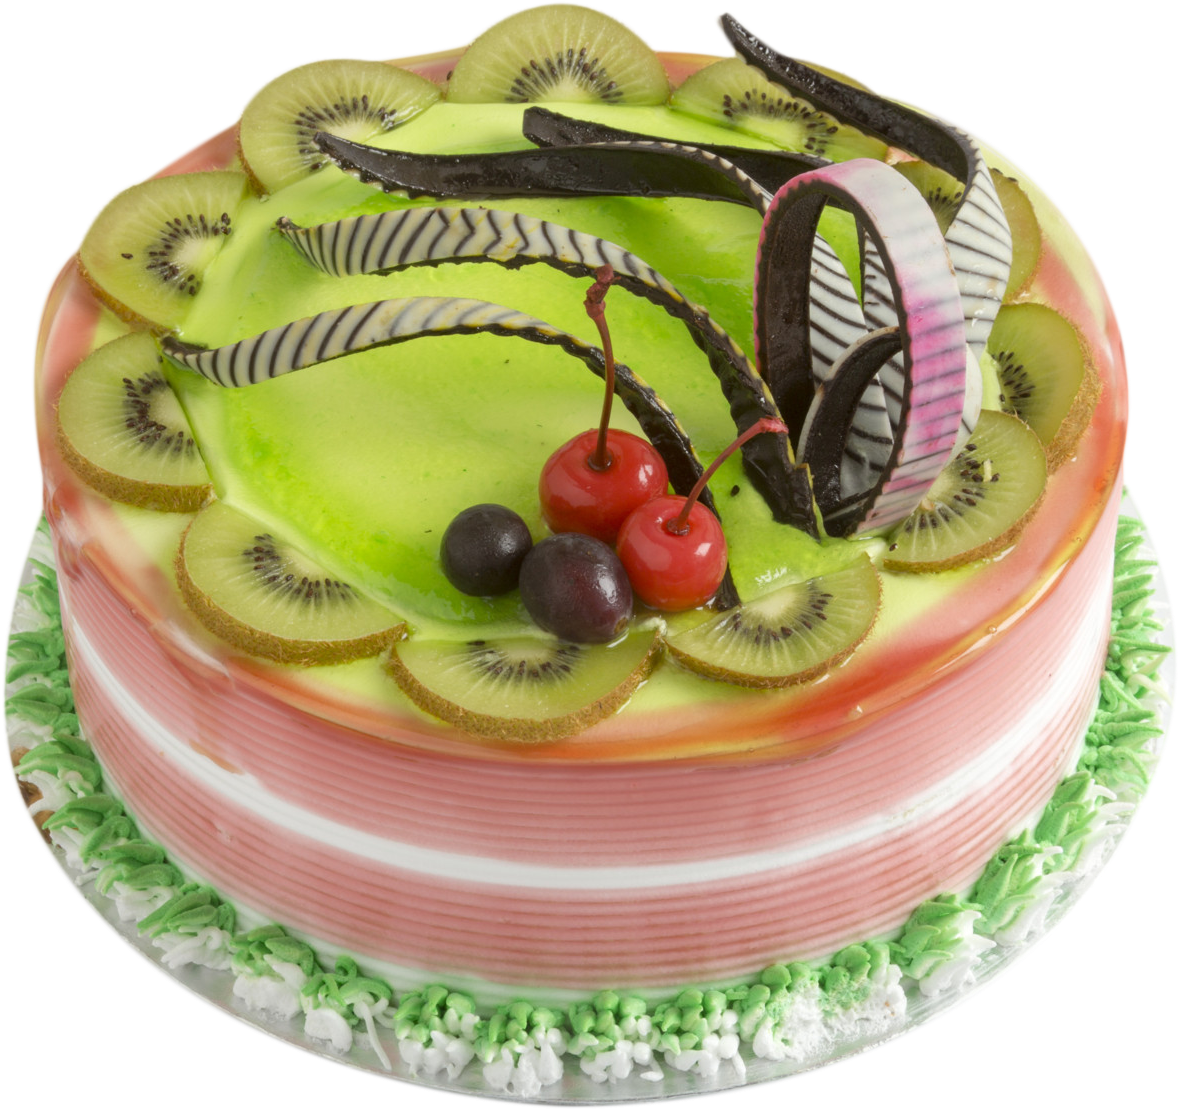 Kiwi Cake - Birthday Cake (2160x1440), Png Download